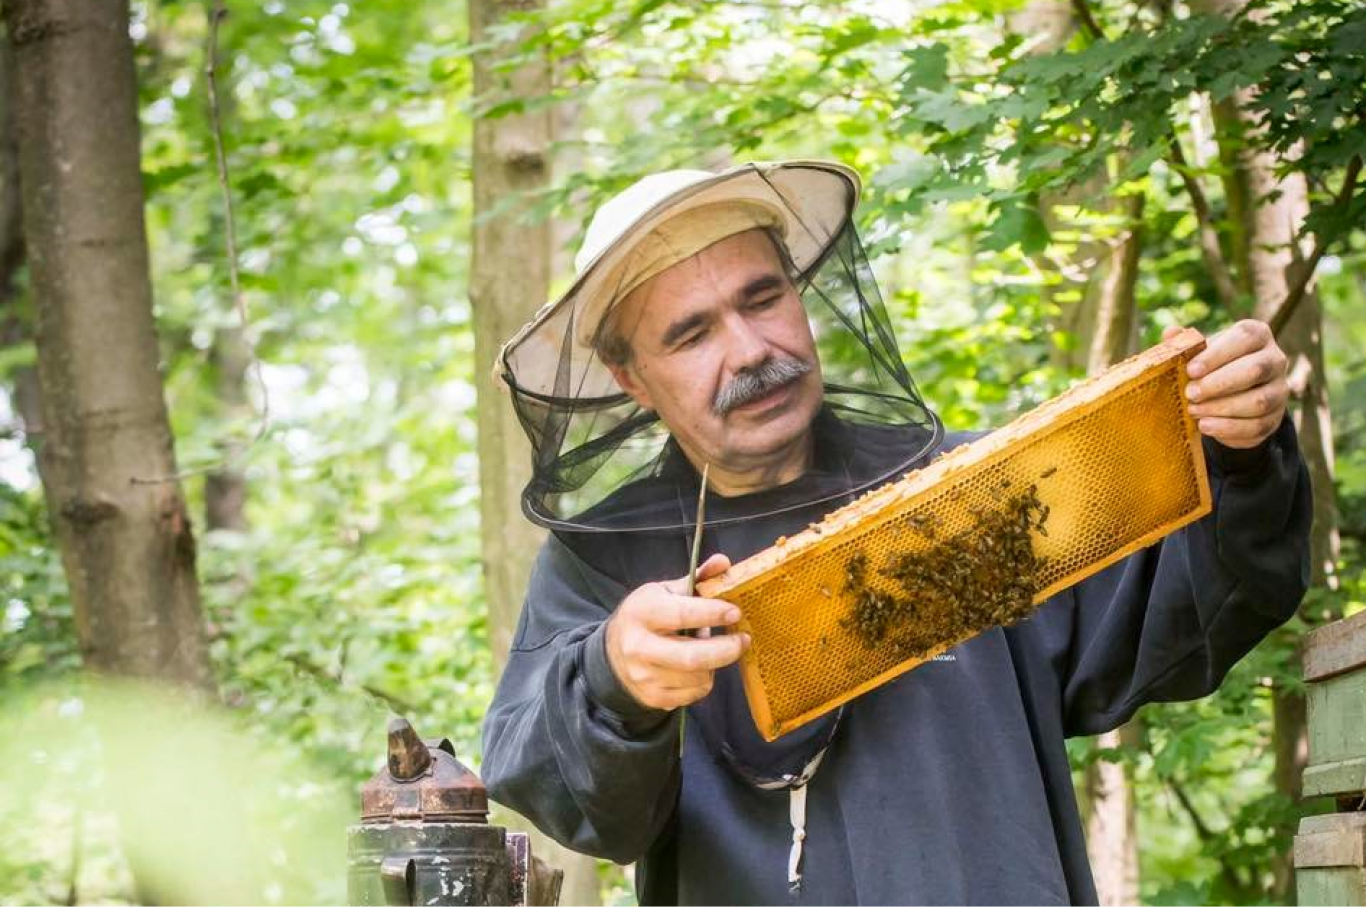 Méhészek szerint a Fidesz biodíszletnek használta őket a gazdatüntetéshez, majd kihúzta a lábuk alól a talajt